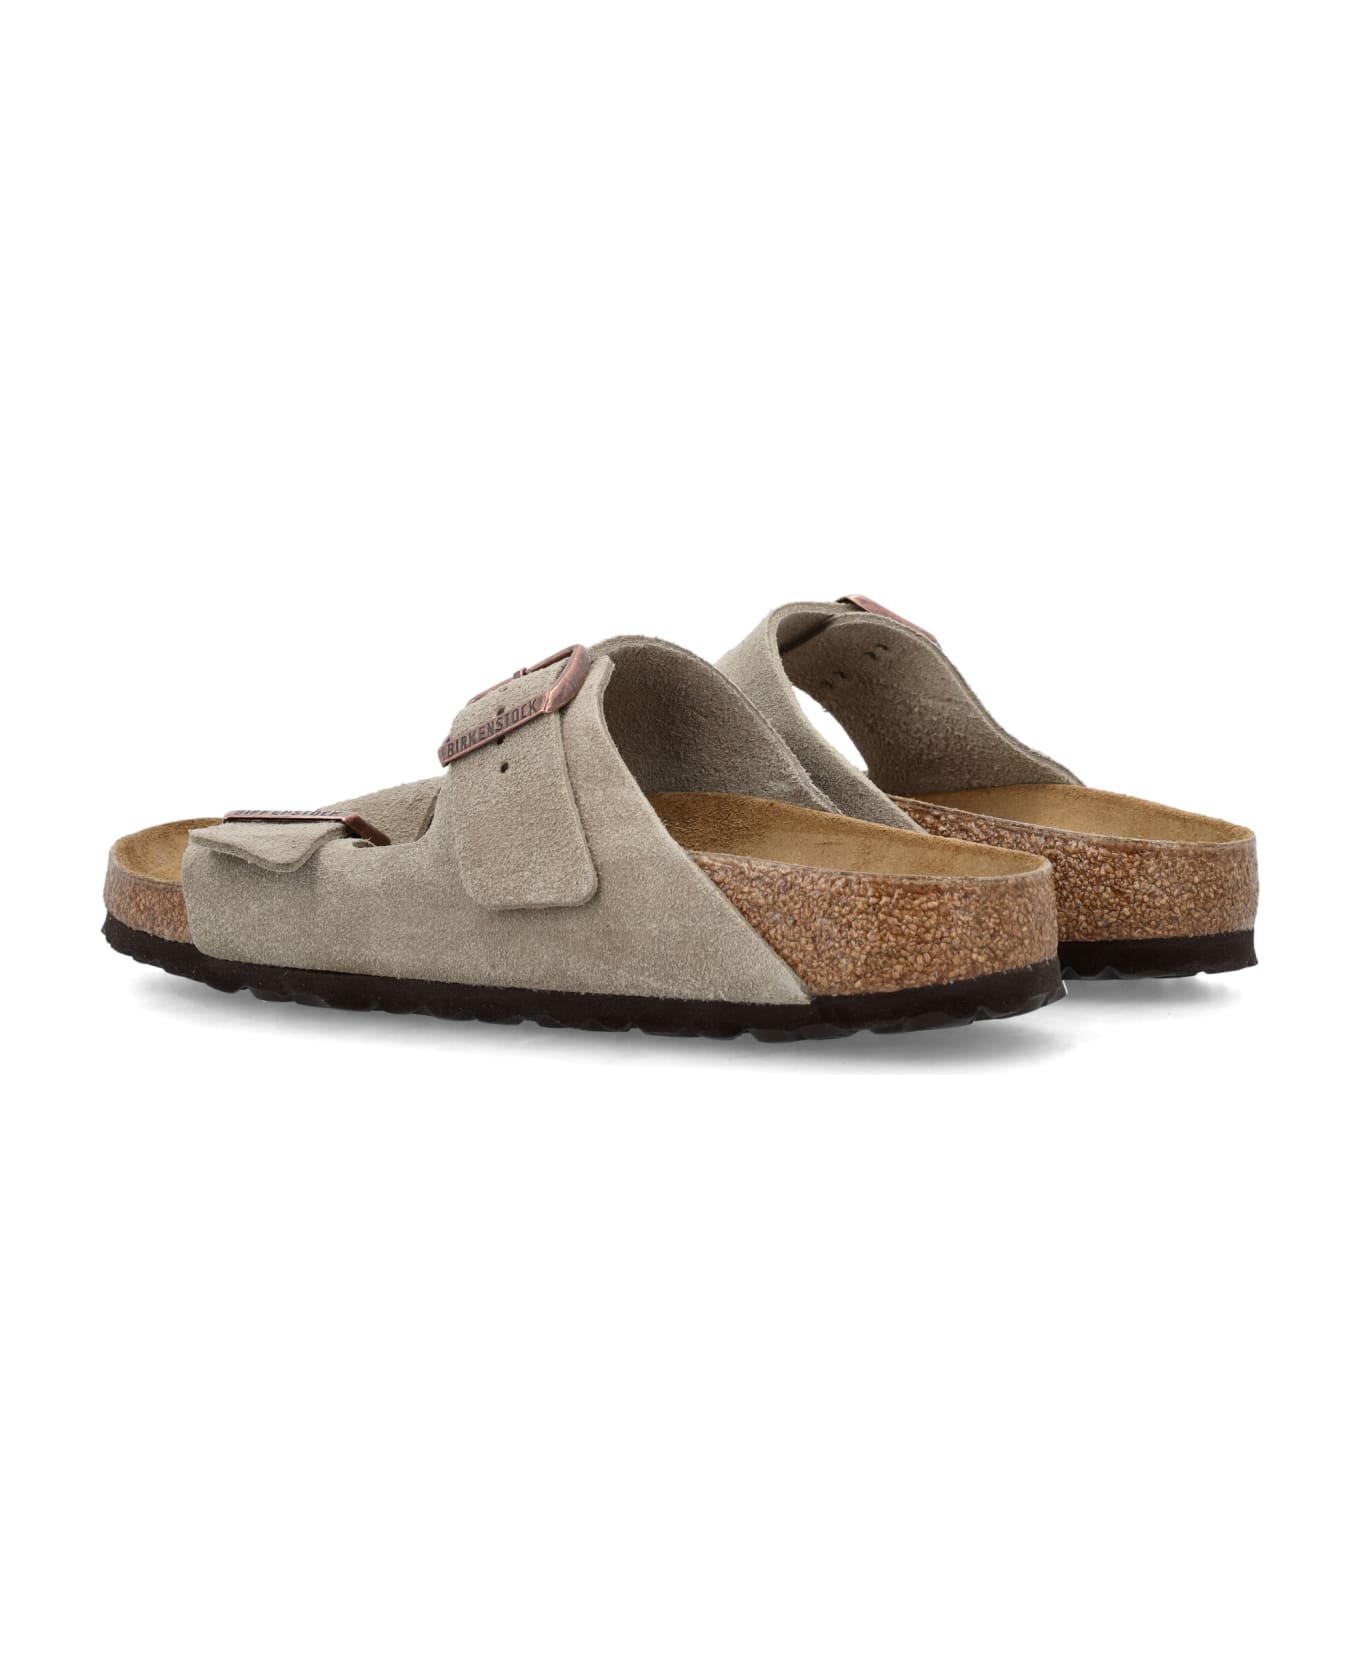 Birkenstock Arizona Suede Sandals - NEUTRALS